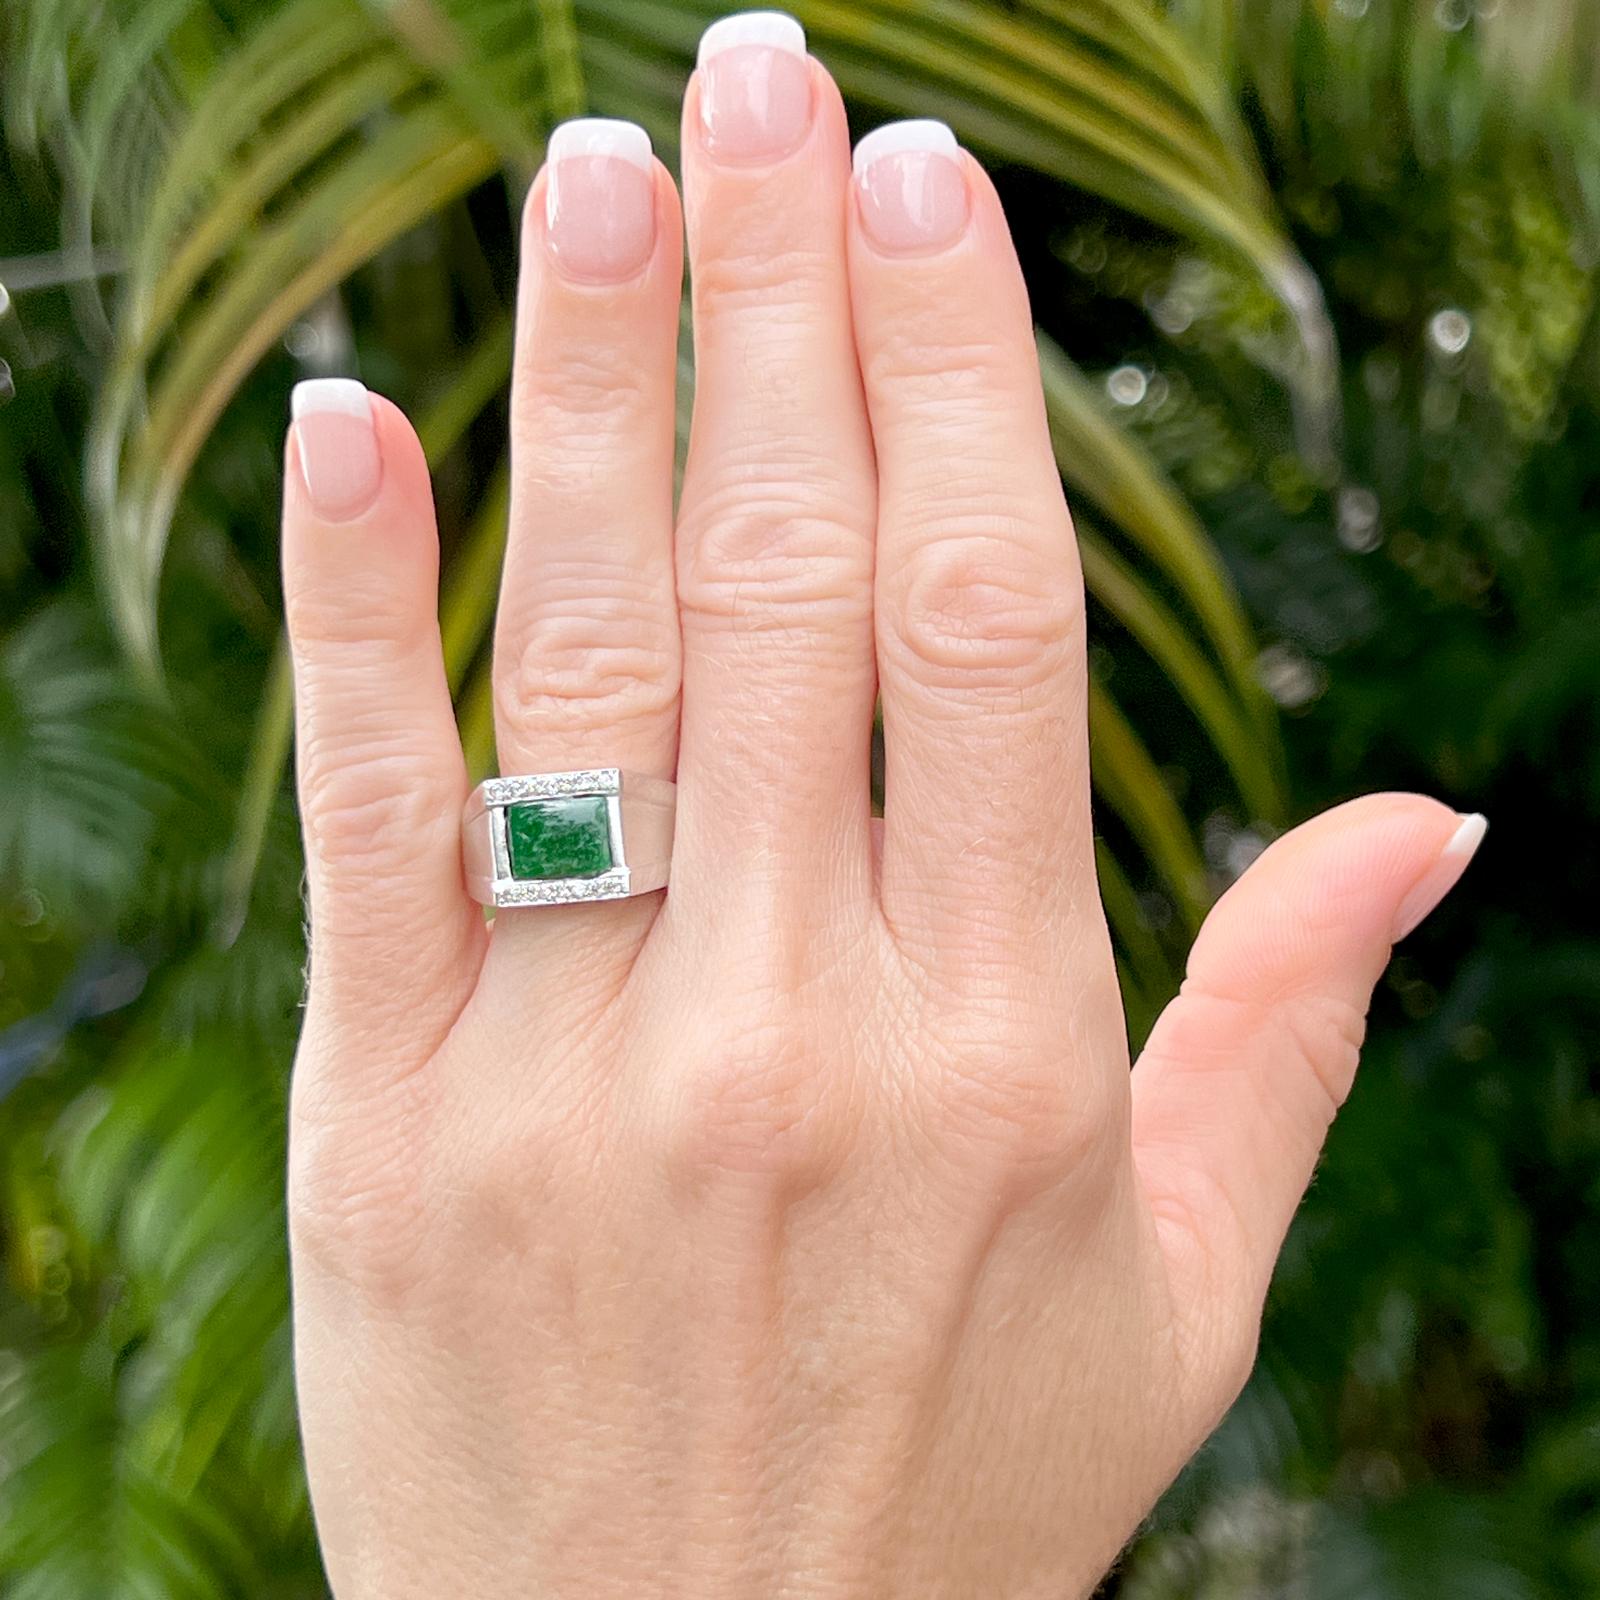 Ring aus Jadeit und Diamanten, gefertigt aus 14 Karat Weißgold. Der Ring besteht aus einem tiefgrünen Jadeit im Cabochon-Schliff und 14 runden Diamanten im Brillantschliff mit einem Gesamtgewicht von etwa 0,18 Karat. Die Diamanten sind von der Farbe